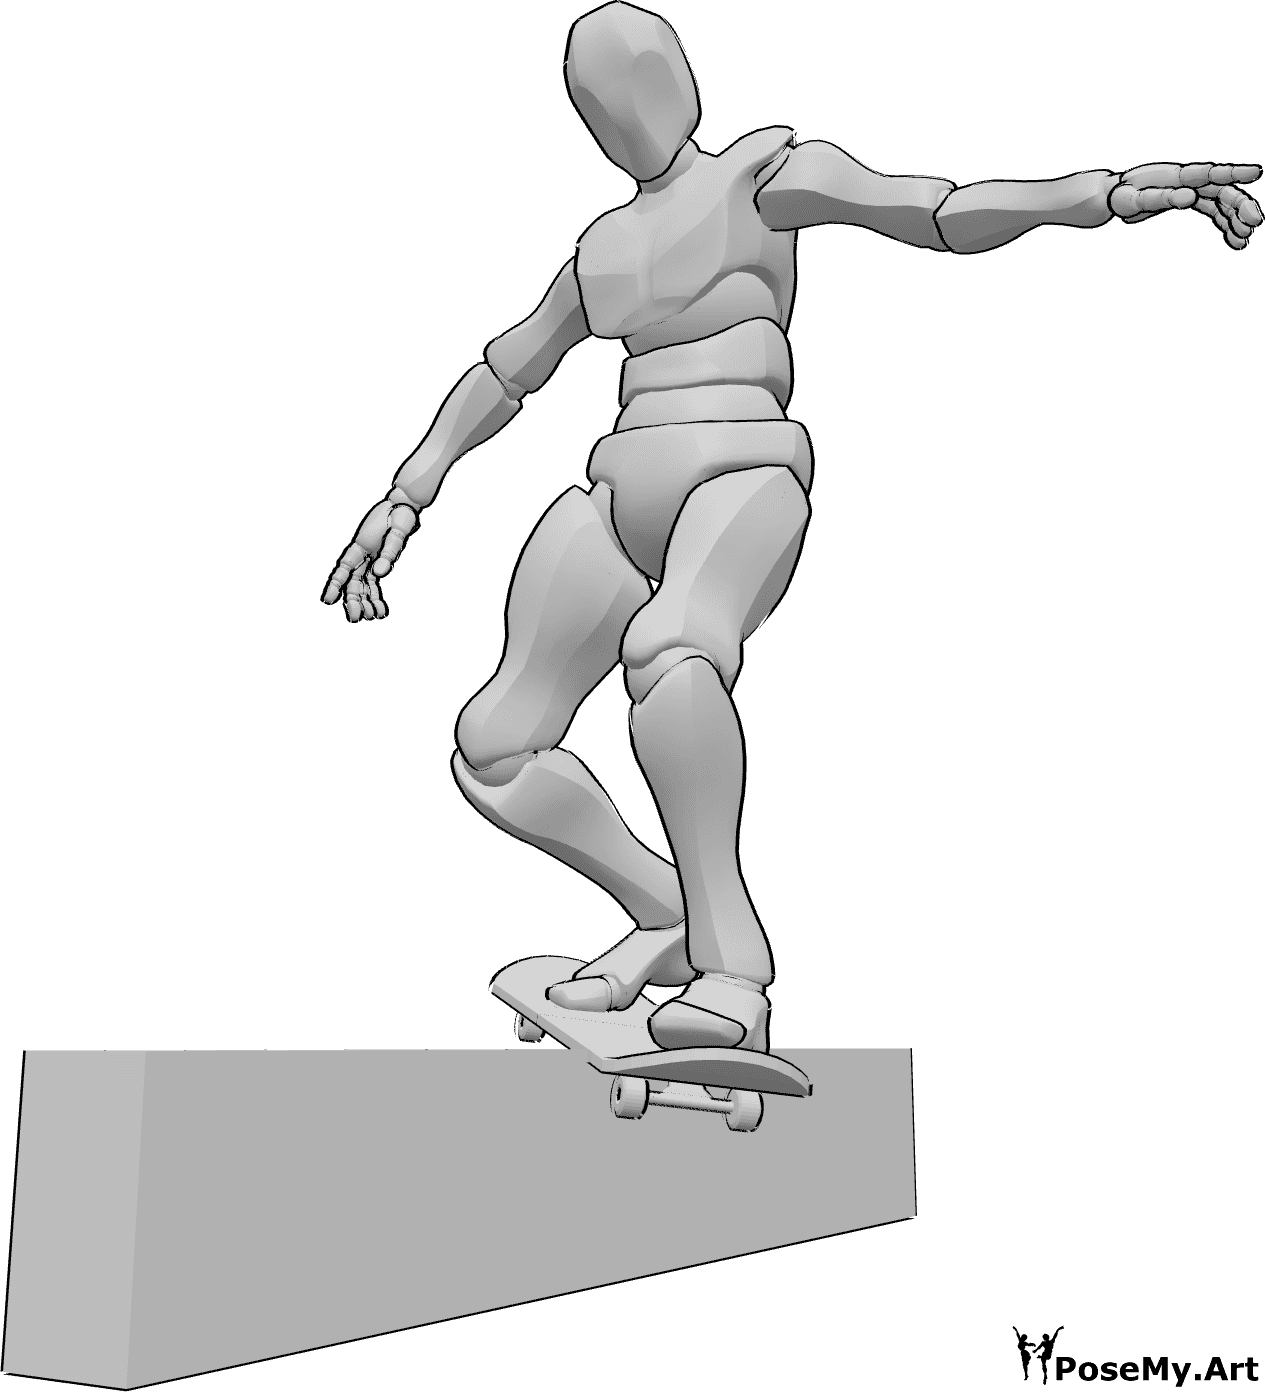 Référence des poses- Pose de la rampe de skateboard en train de glisser - Homme glissant sur une rampe avec son skateboard, en équilibre avec ses mains, référence de dessin de skateboard